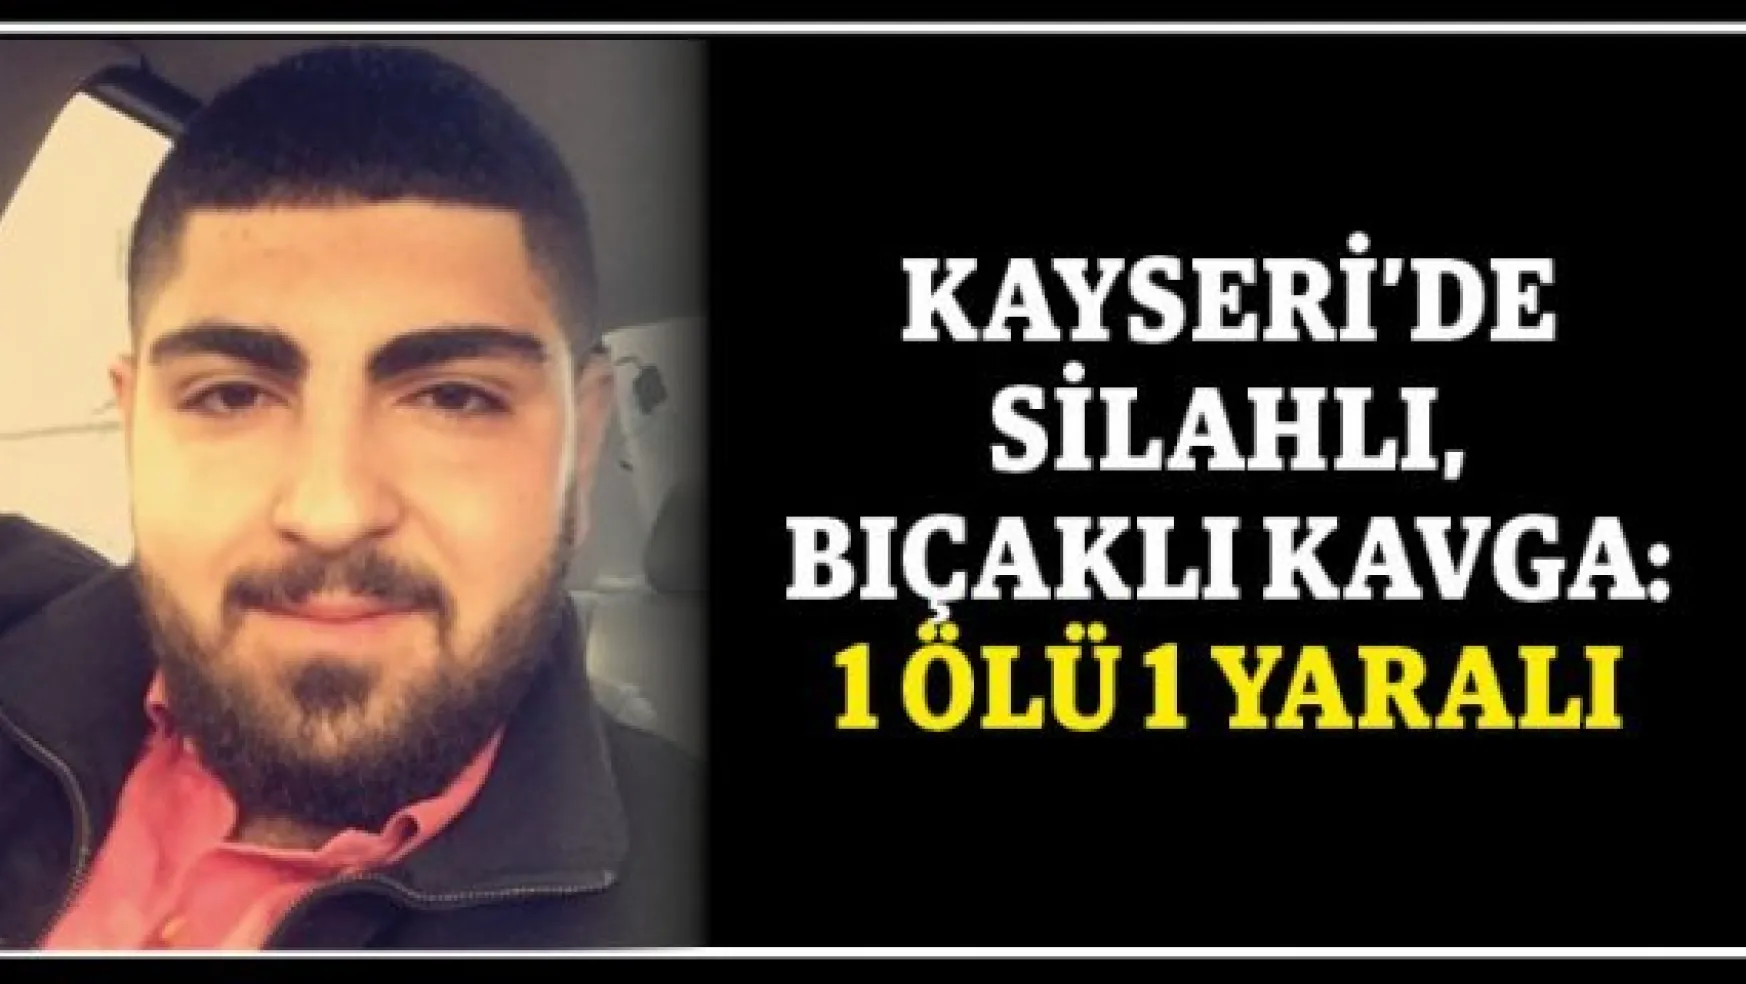 Kayseri'de silahlı, bıçaklı kavga: 1 ölü 1 yaralı